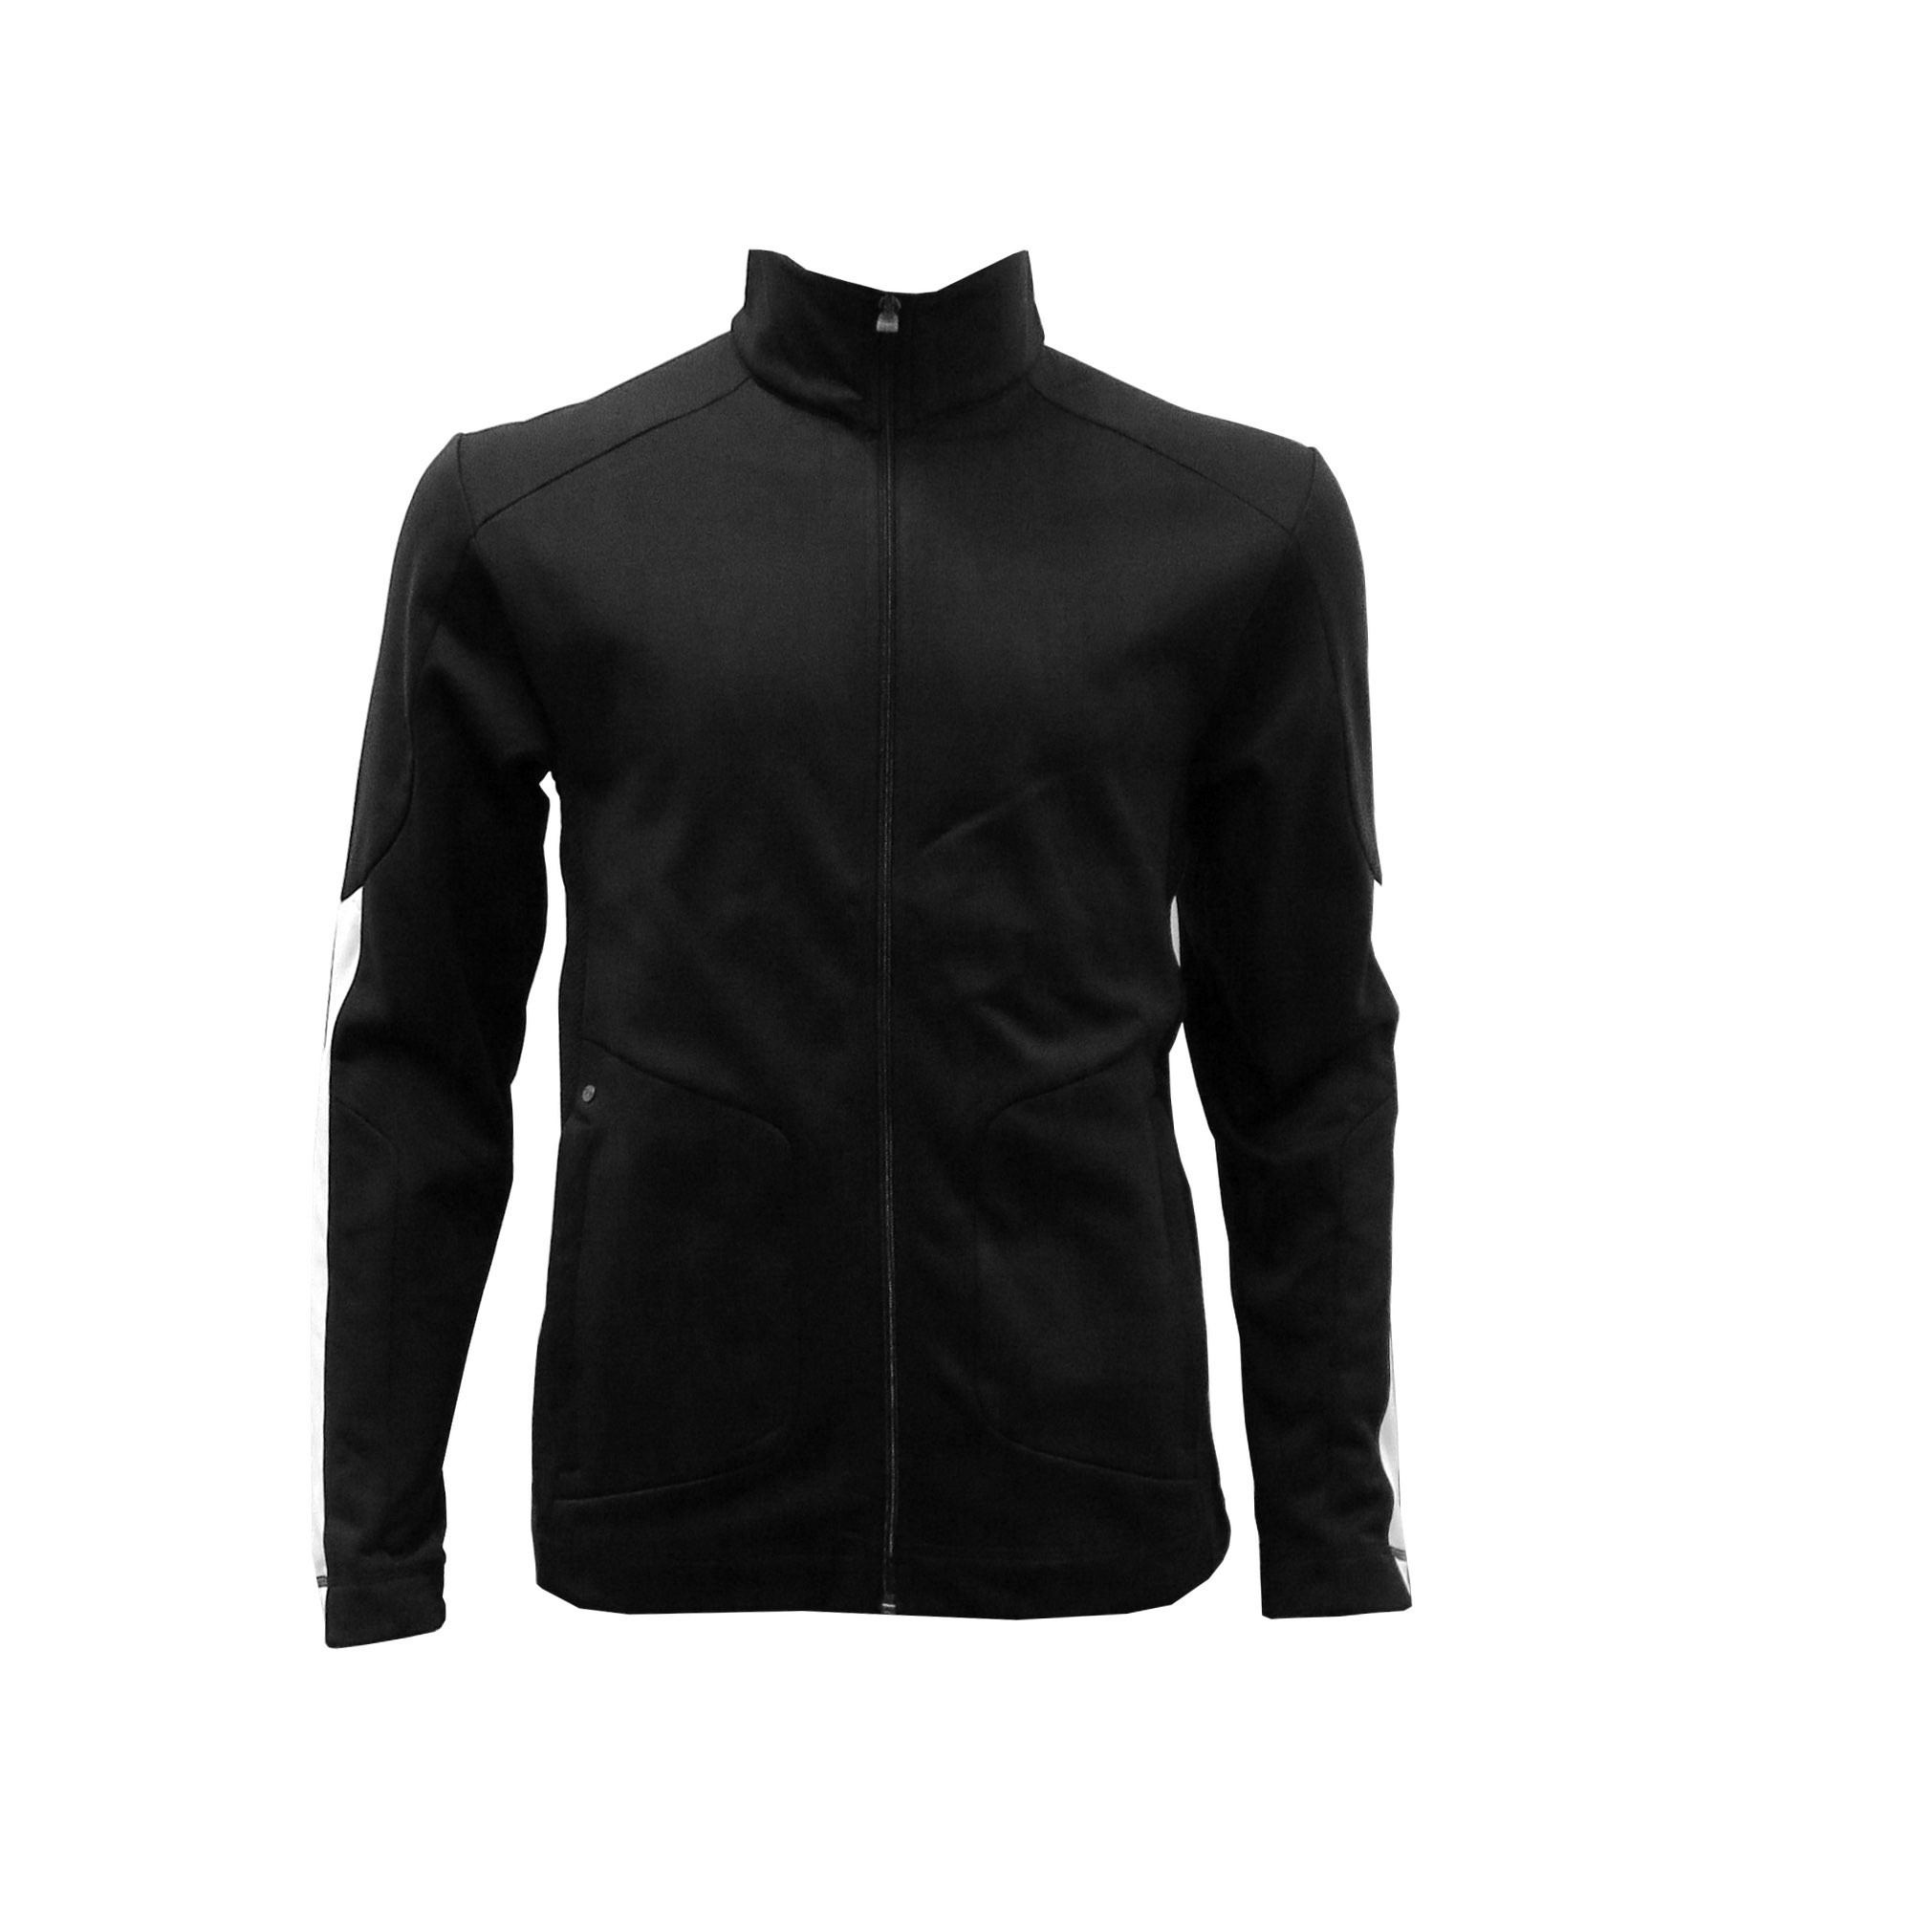 Bluza mska Maple Jacket Elevate, czarny